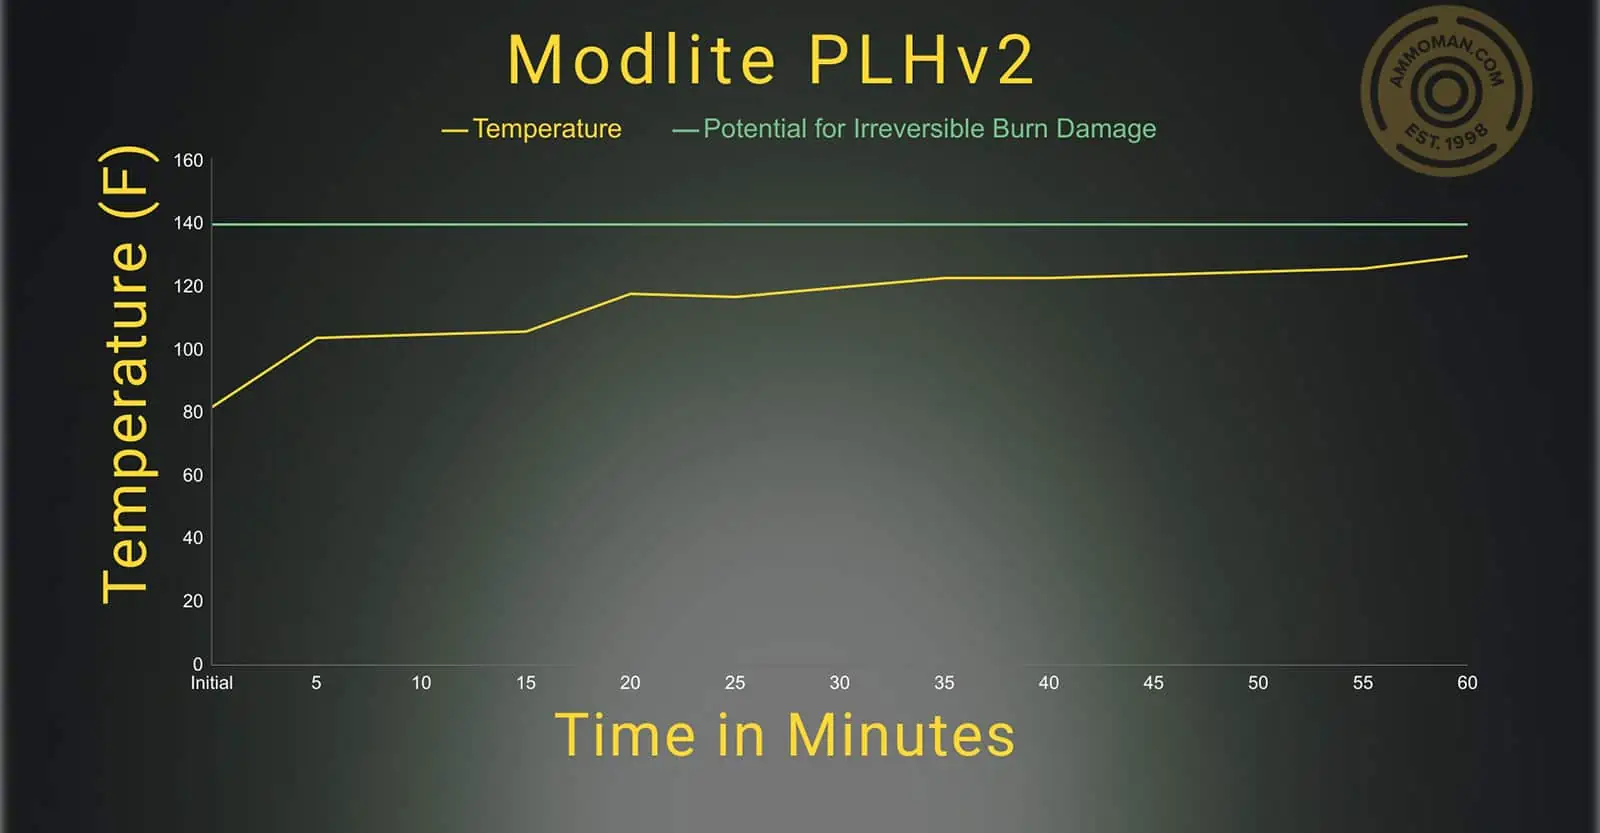 Modlite PLHv2 temperature profile